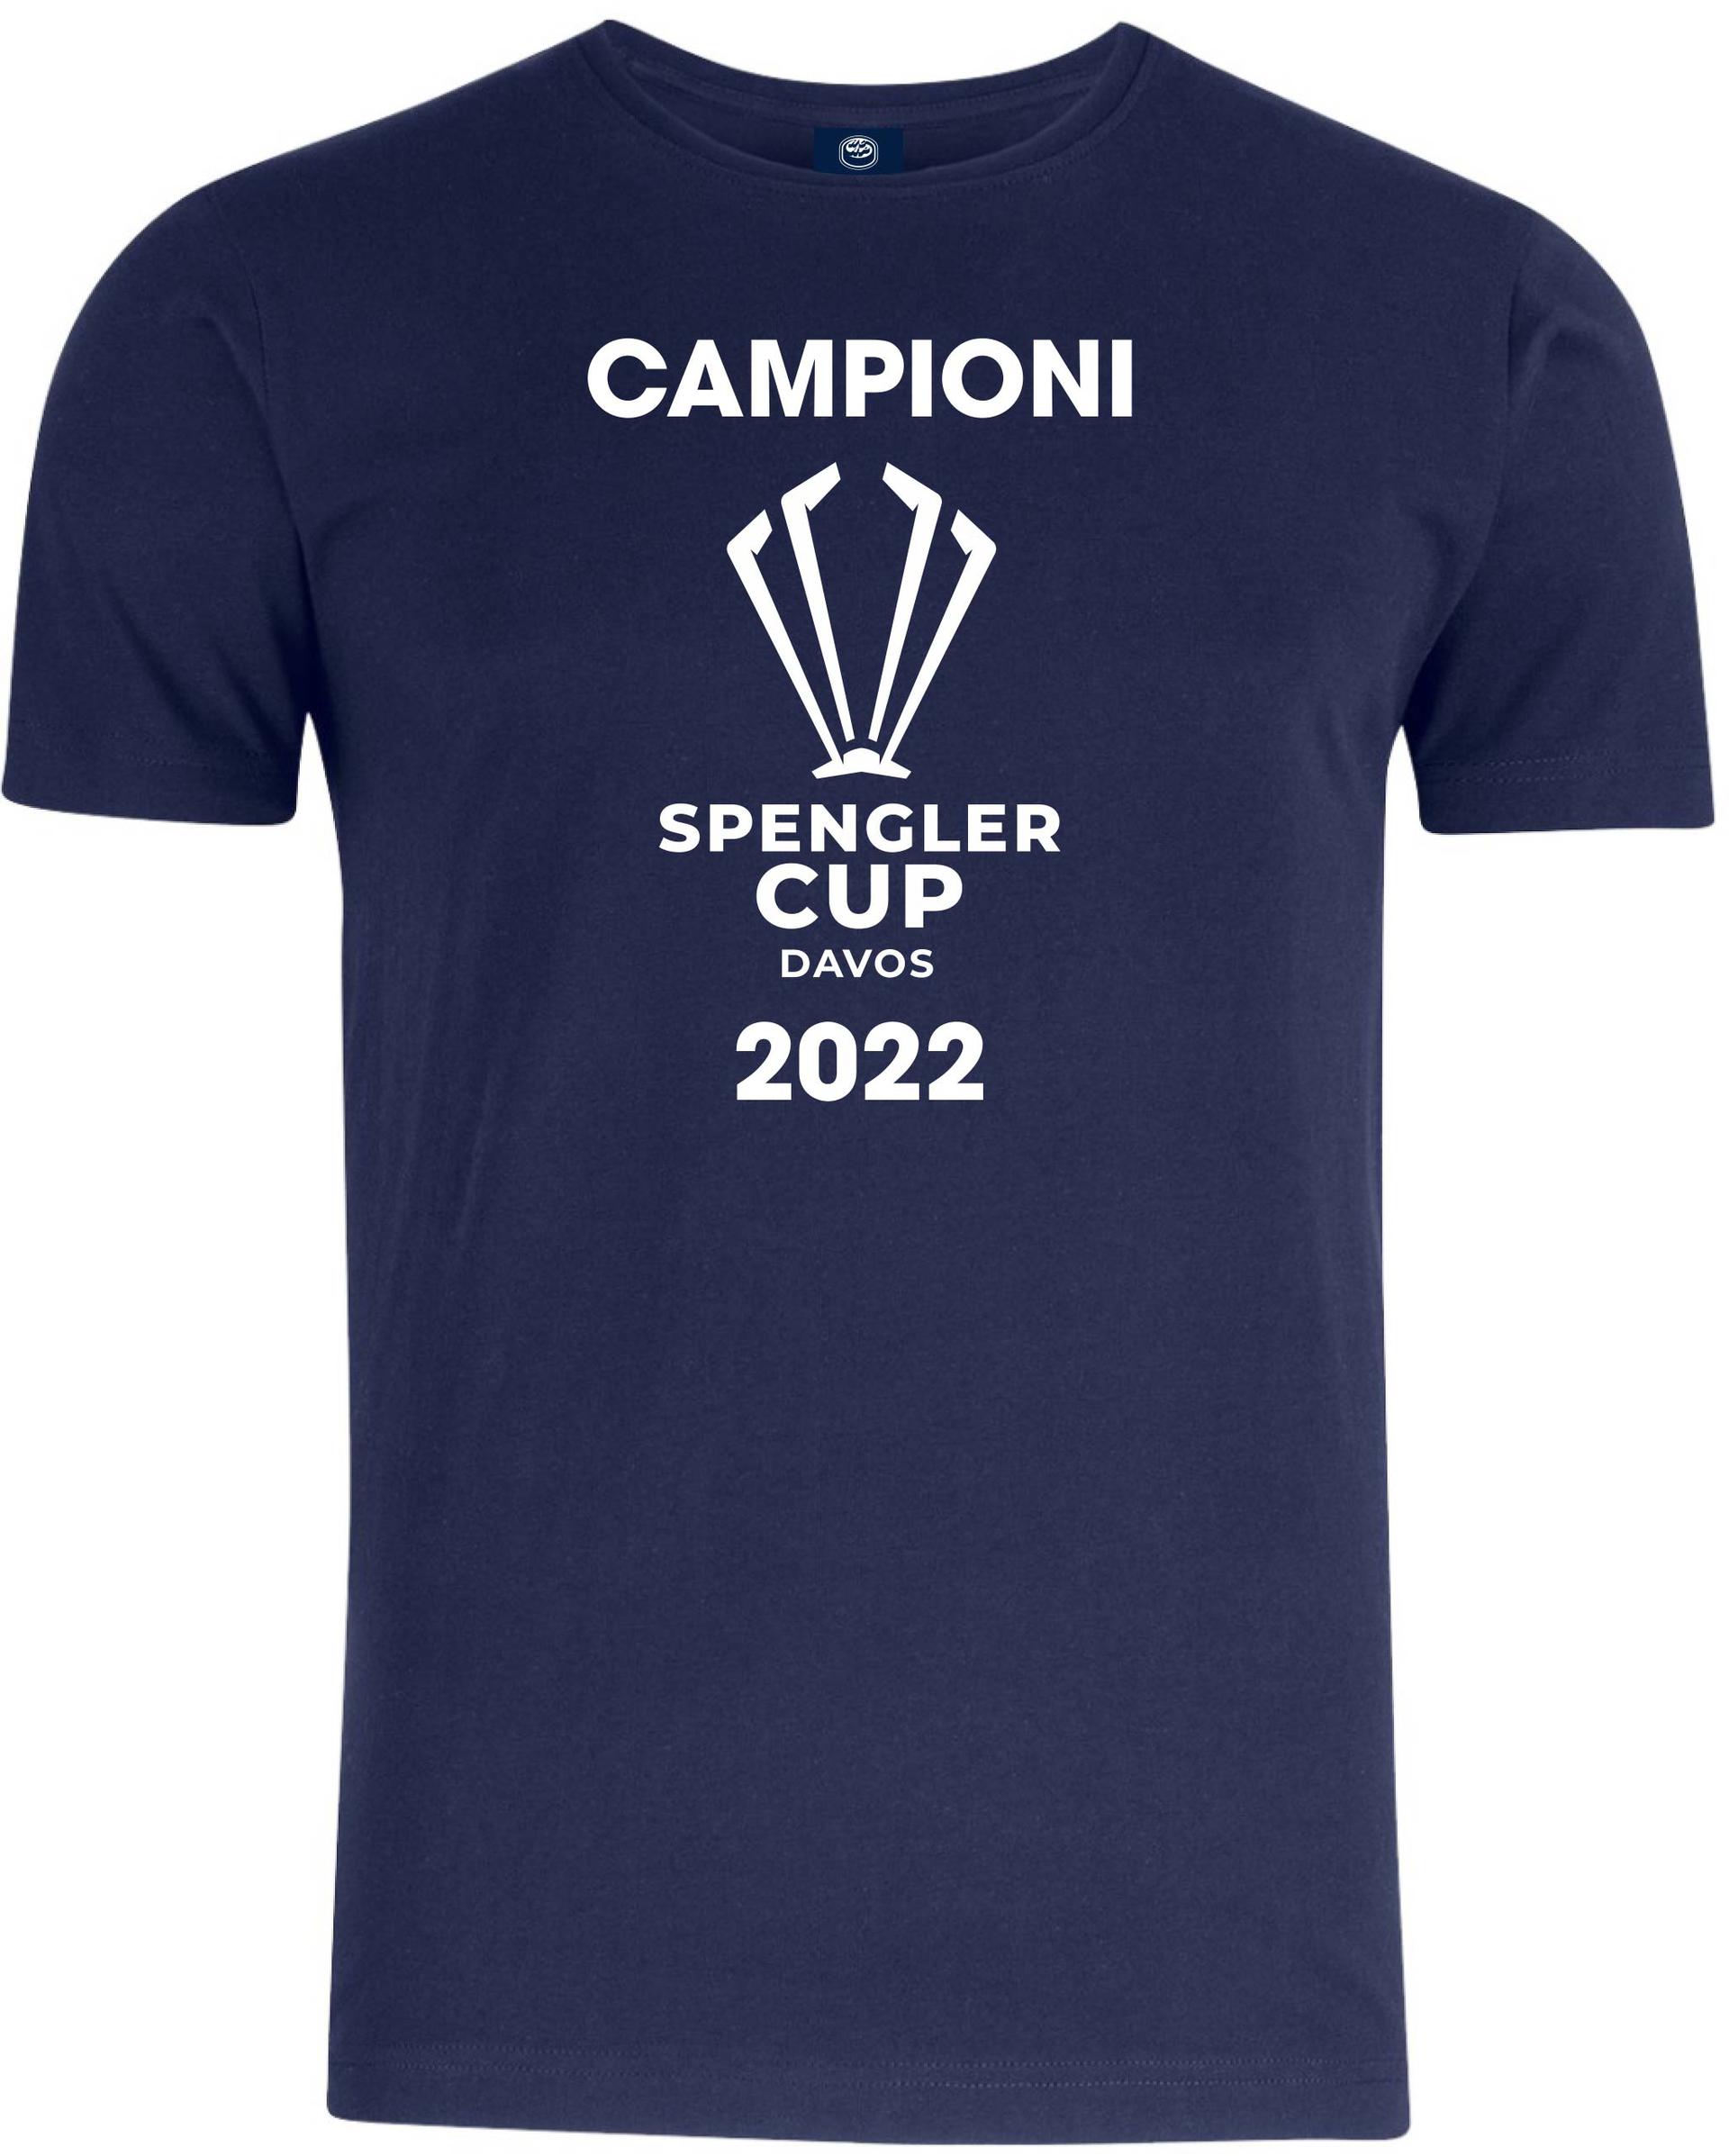 T-shirt CAMPIONI - Spengler Cup